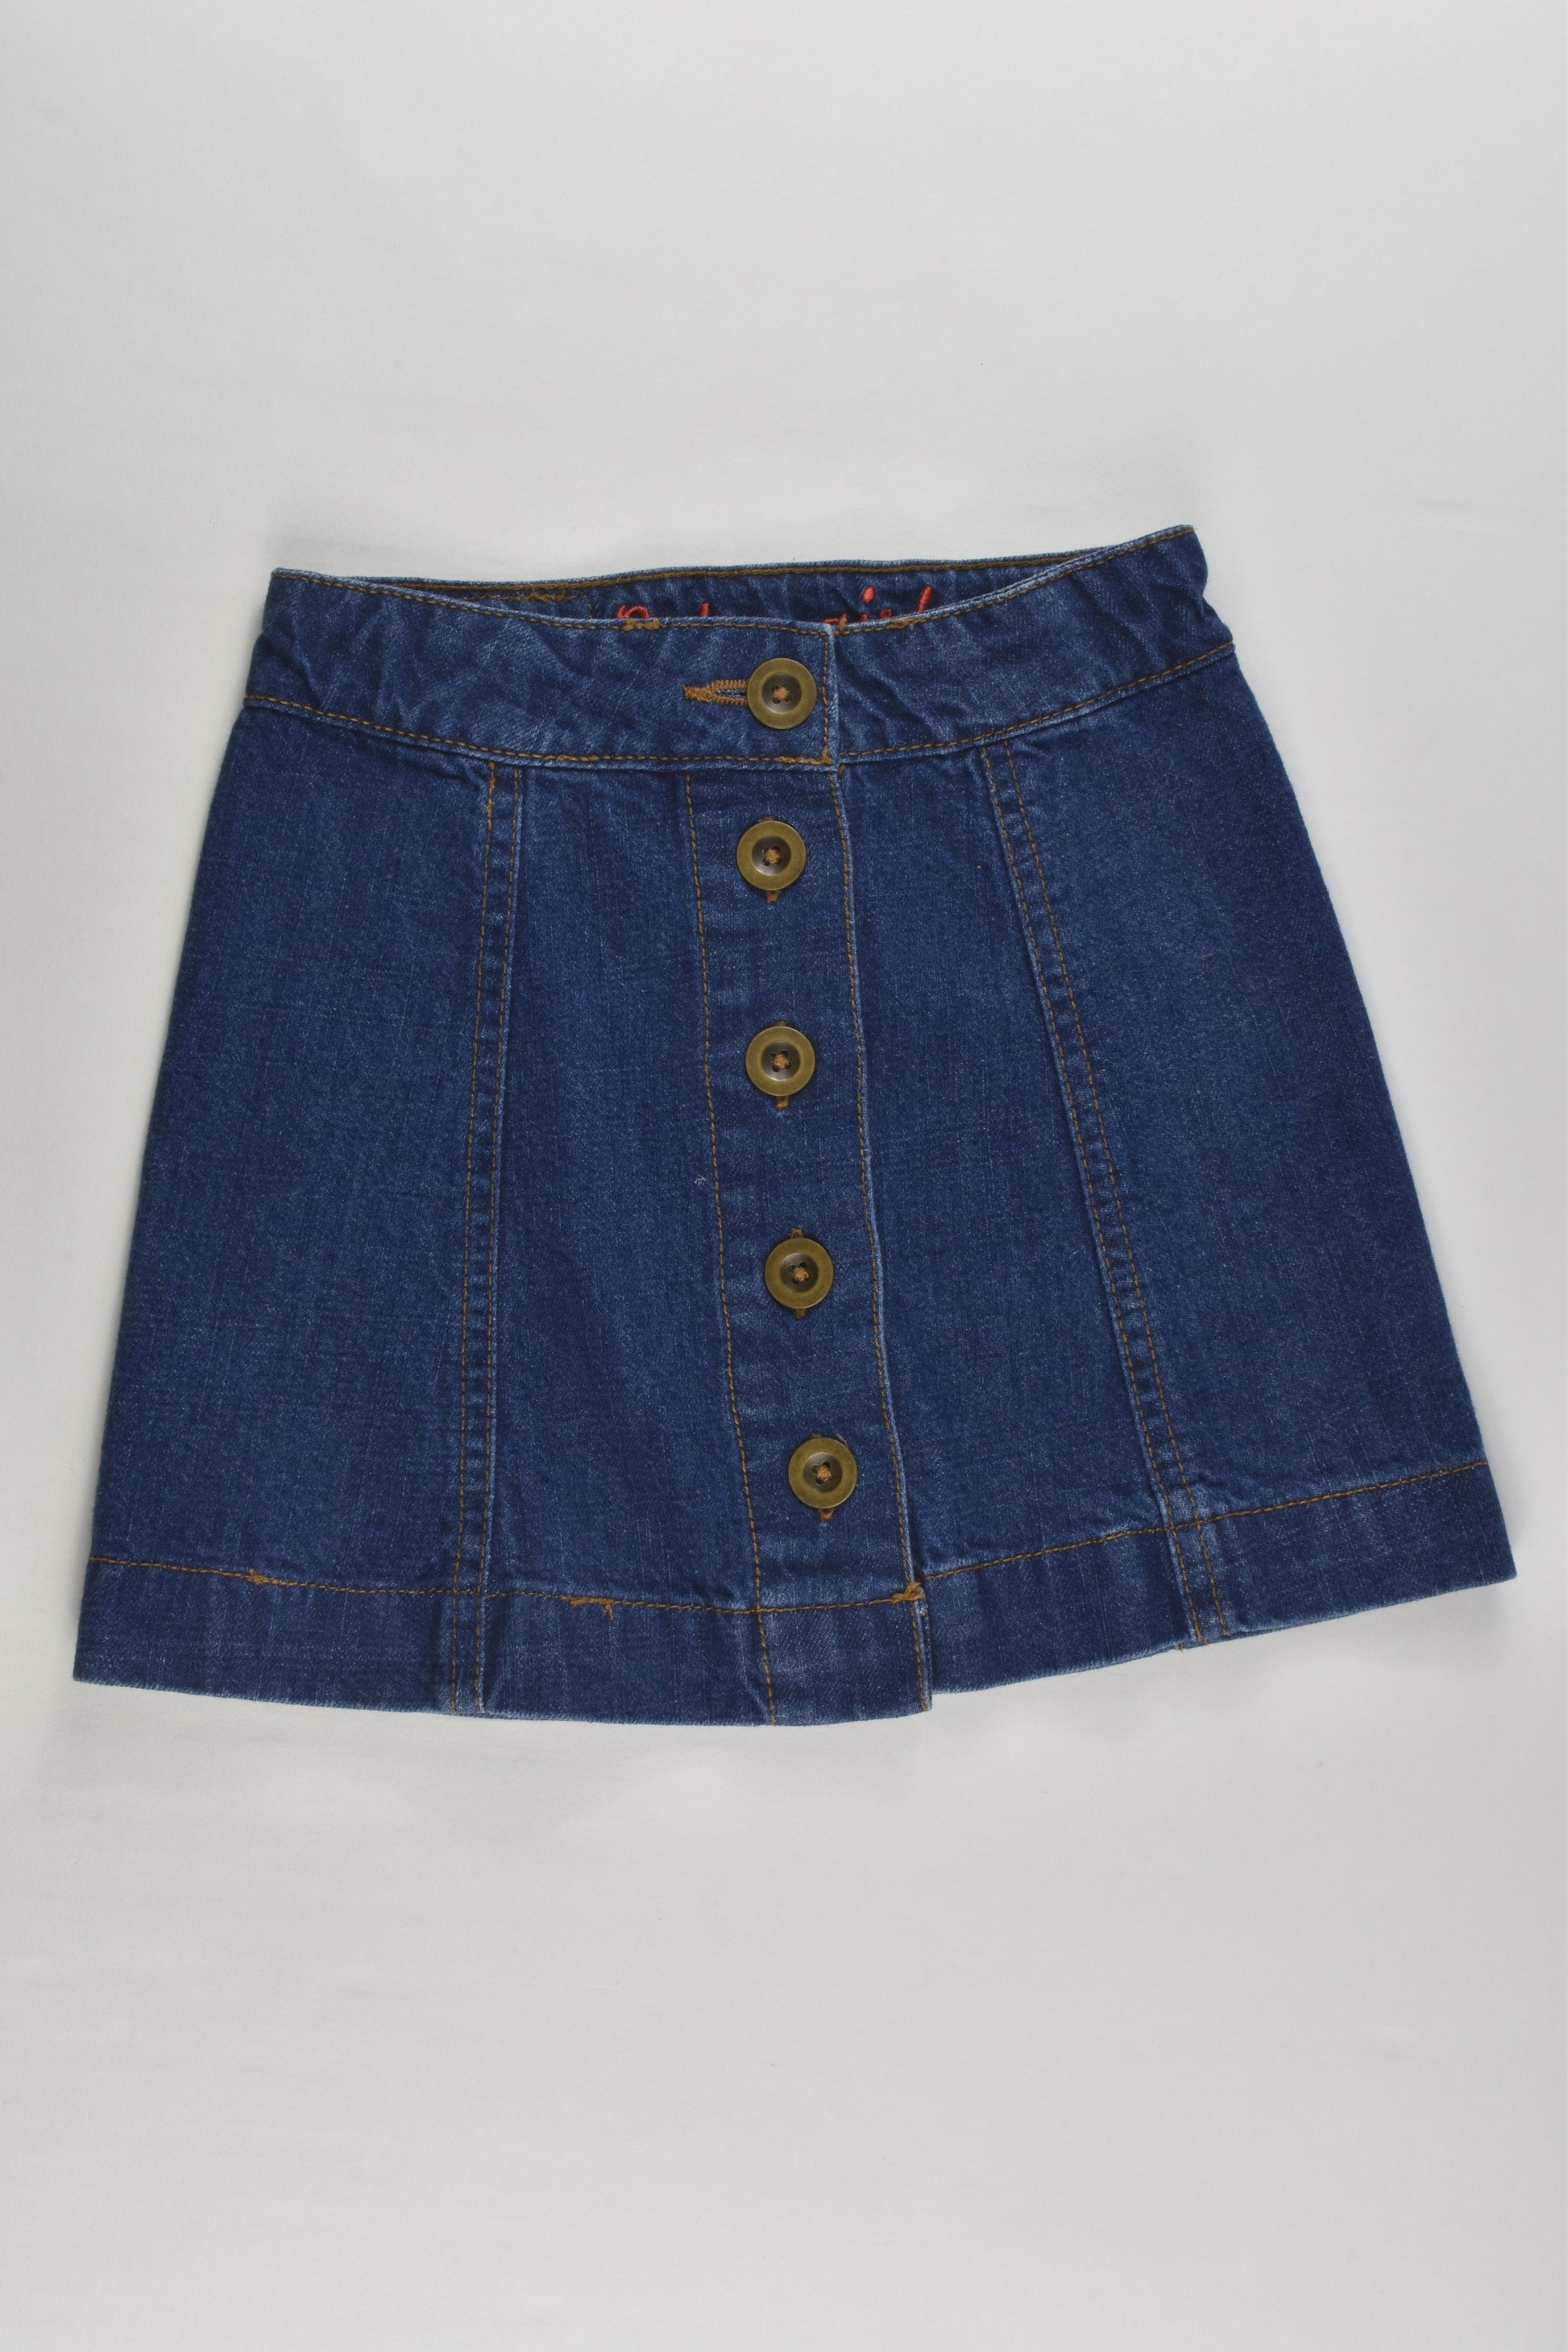 NEW St Bernard for Dunnes Stores Size 3 'Retro Girl' Denim Skirt